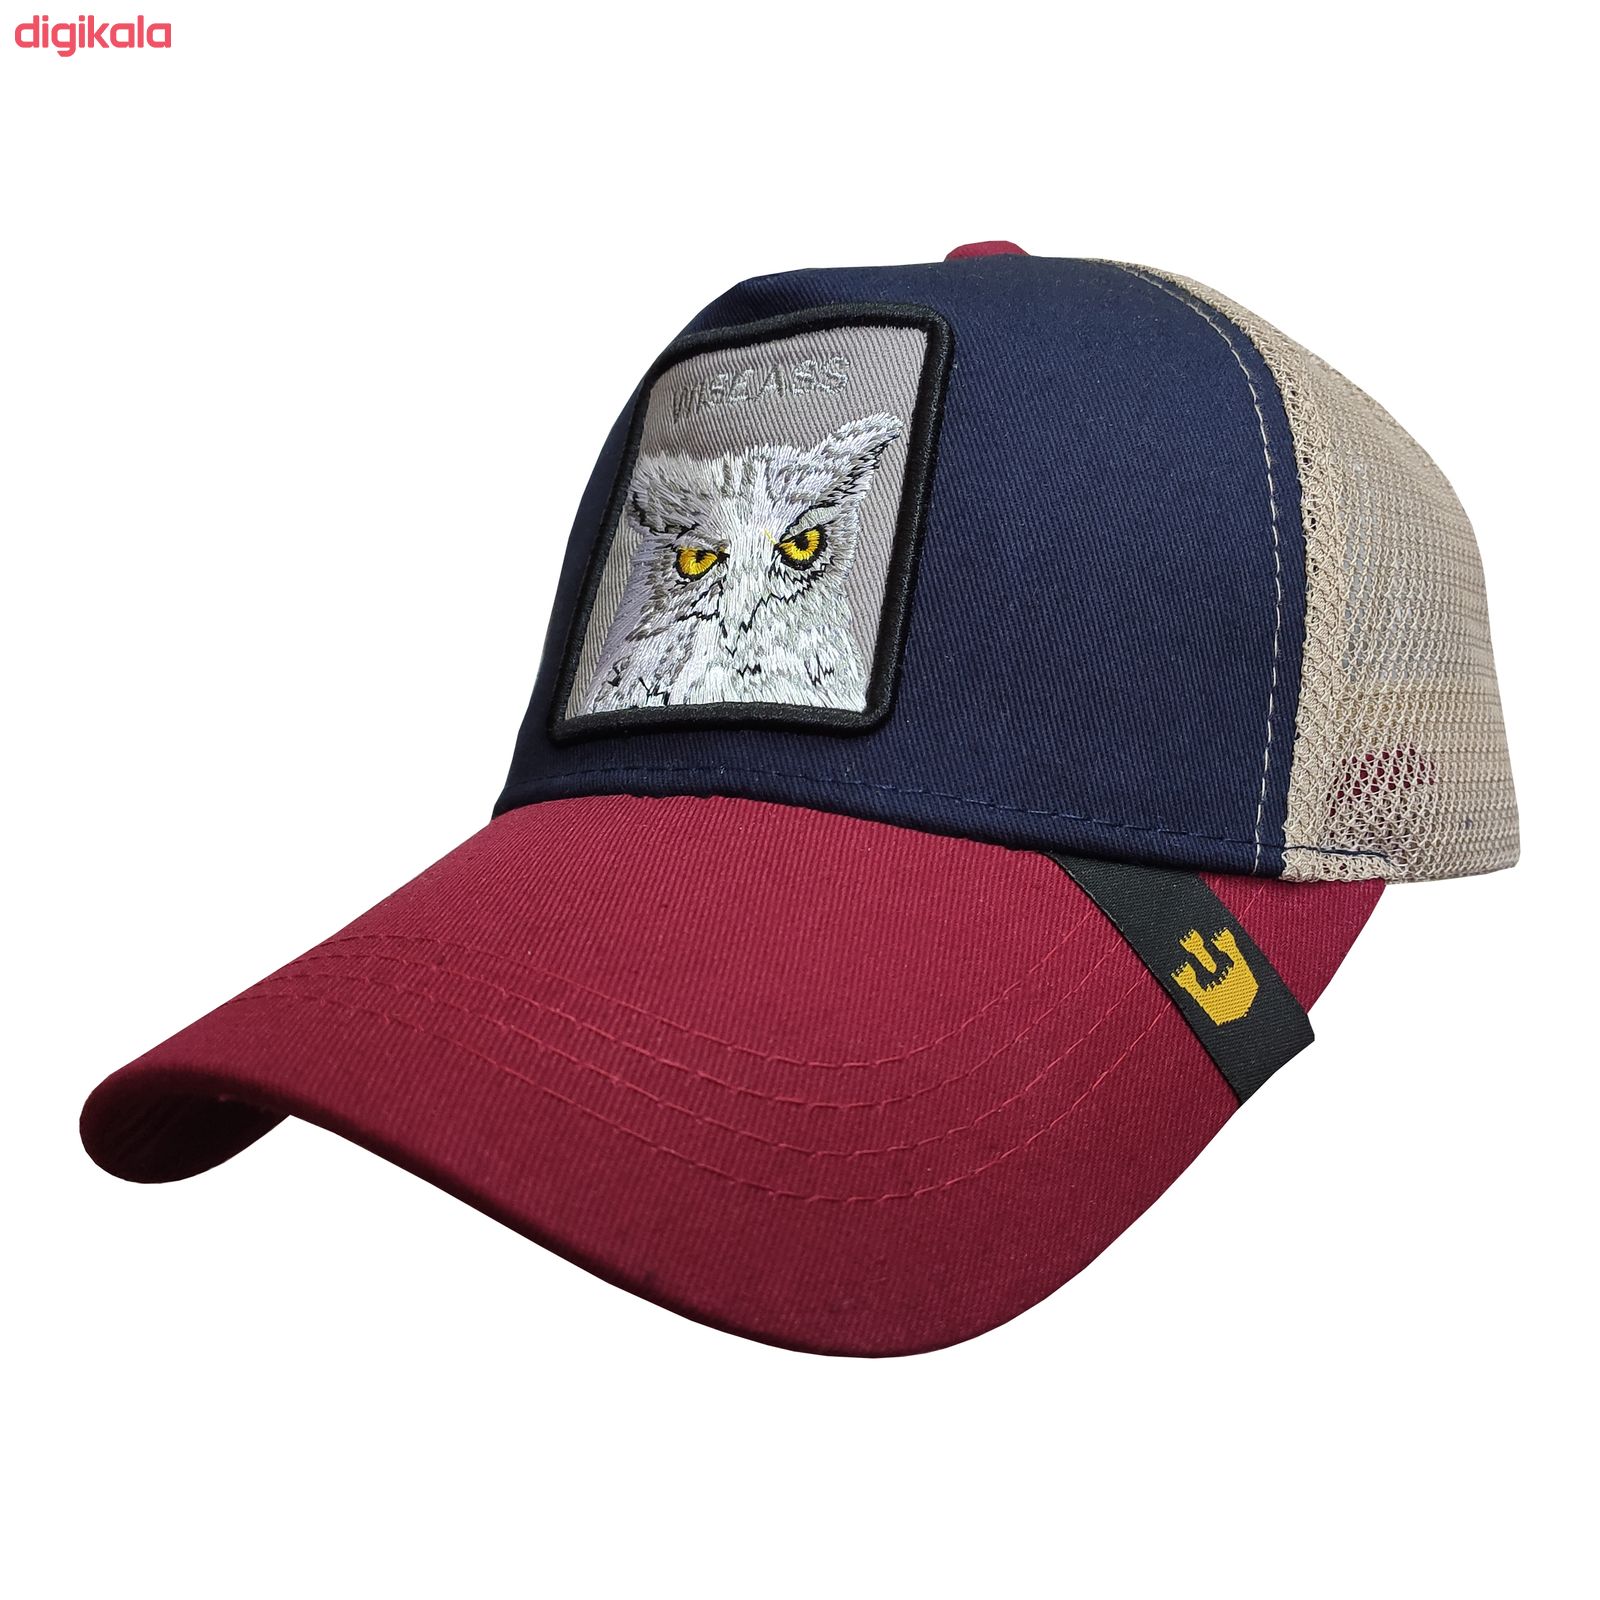 کلاه کپ پسرانه طرح جغد کد PT-30308 رنگ زرشکی